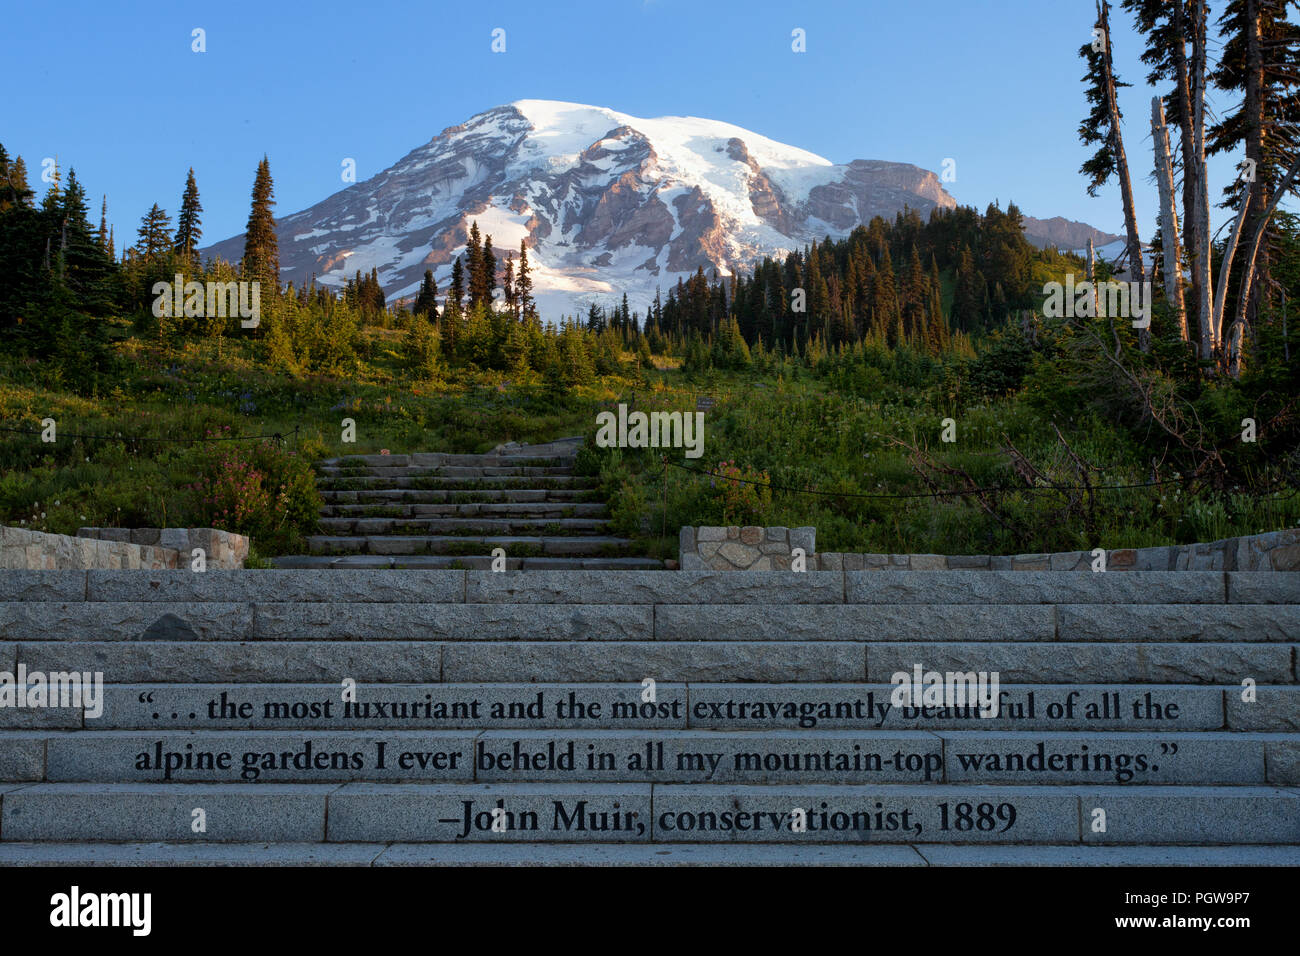 Mt Rainier et John Muir devis sur des marches en pierre qui mènent à plusieurs sentiers Banque D'Images